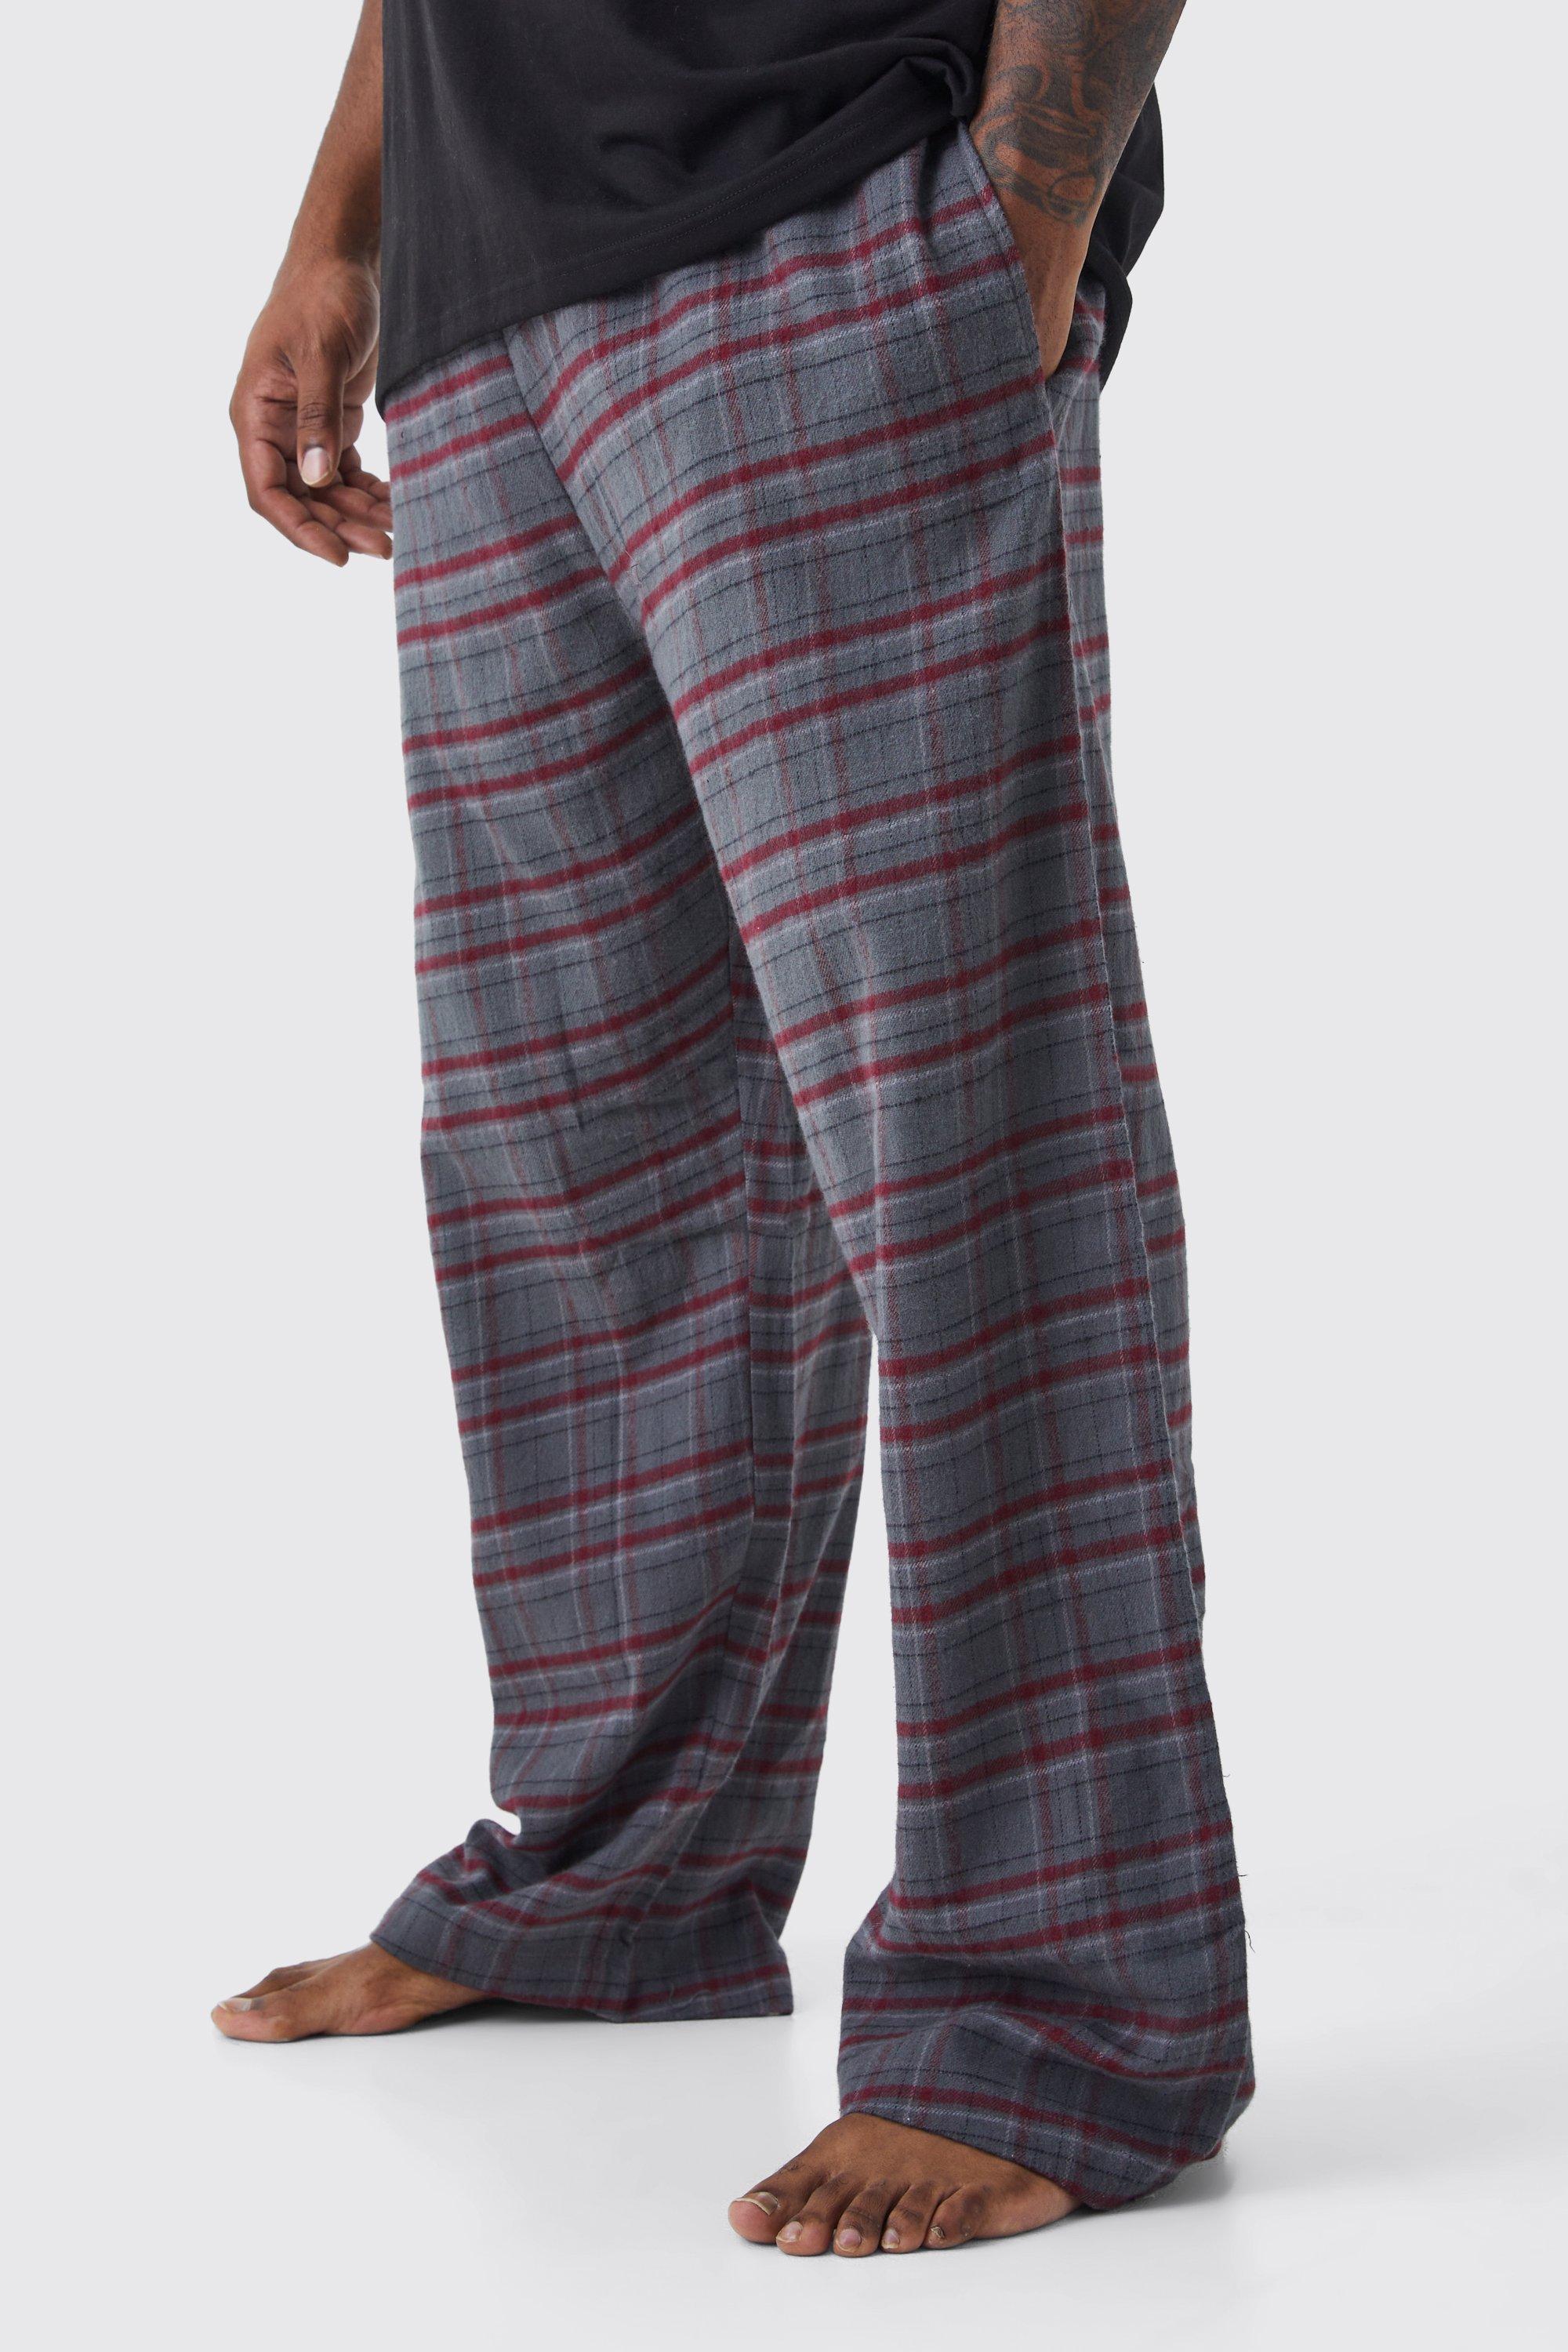 grande taille - pantalon de pyjama à carreaux homme - gris - xxxl, gris